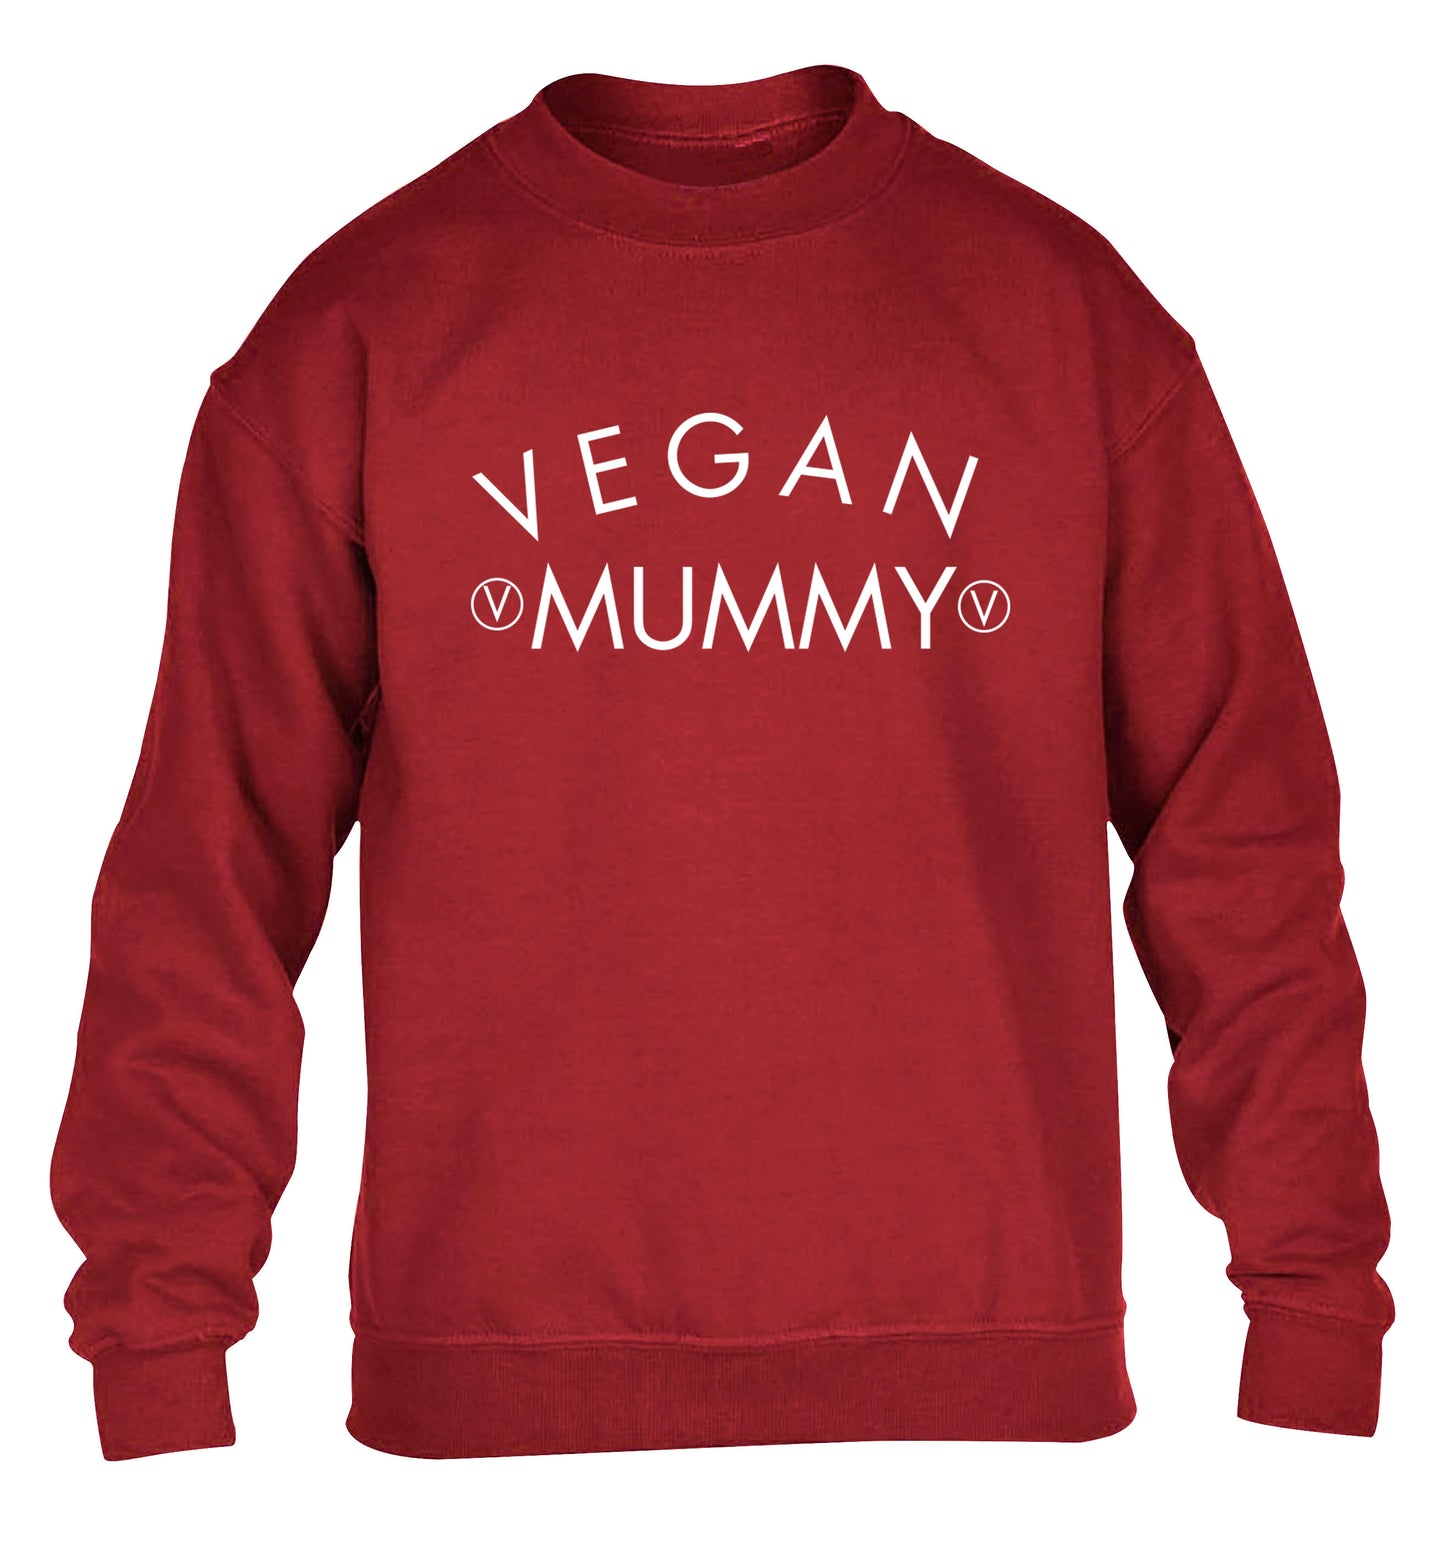 Vegan mummy children's grey sweater 12-14 Years